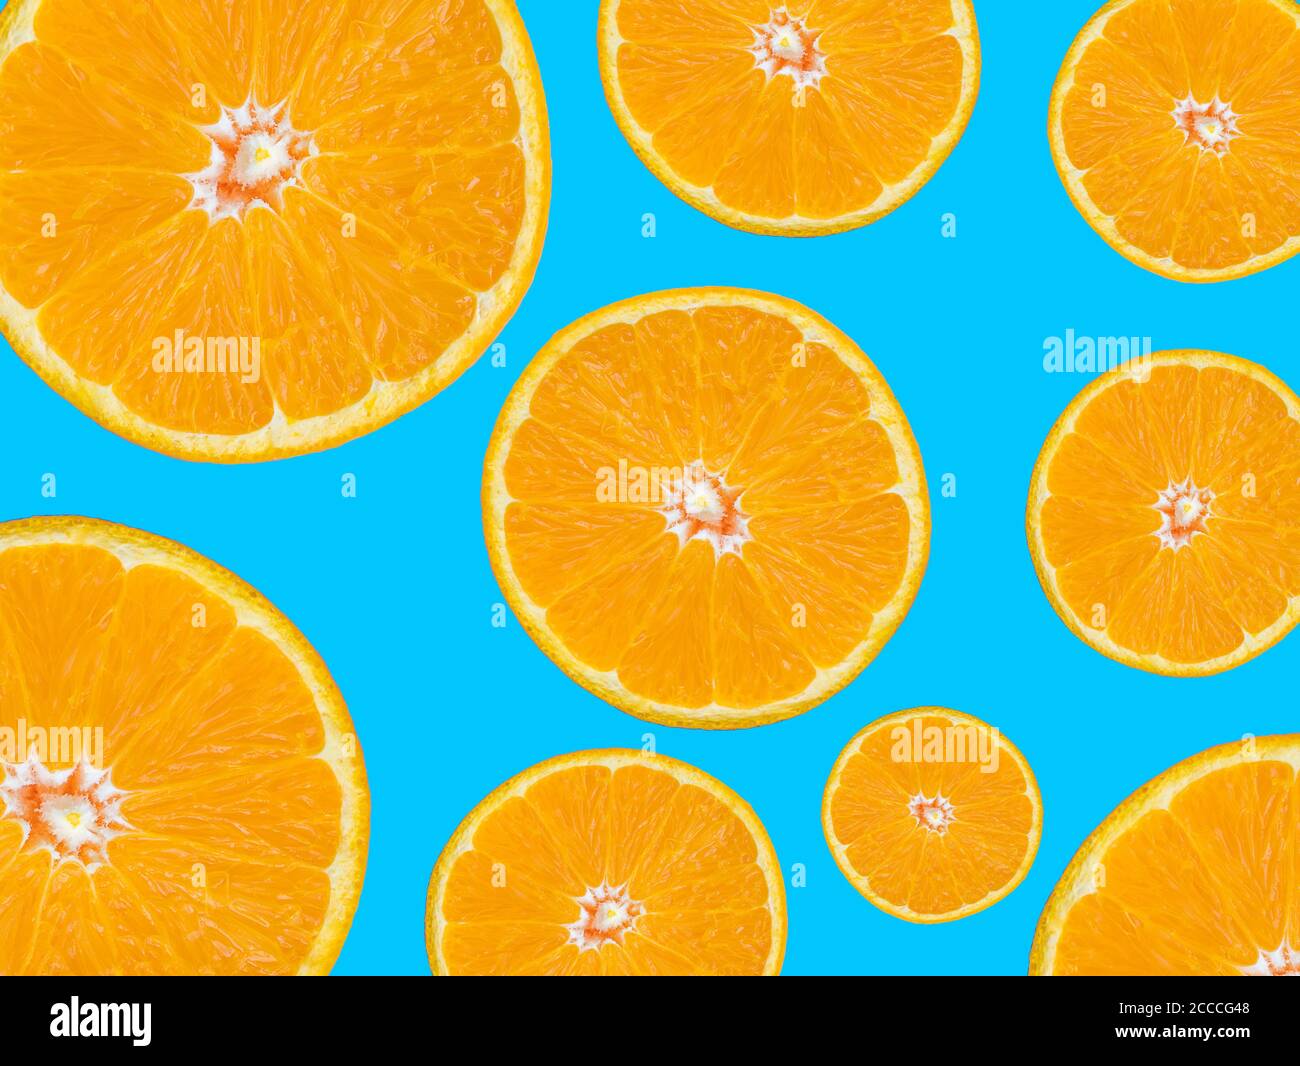 Motif de tranches orange sur fond bleu, style pop art Banque D'Images